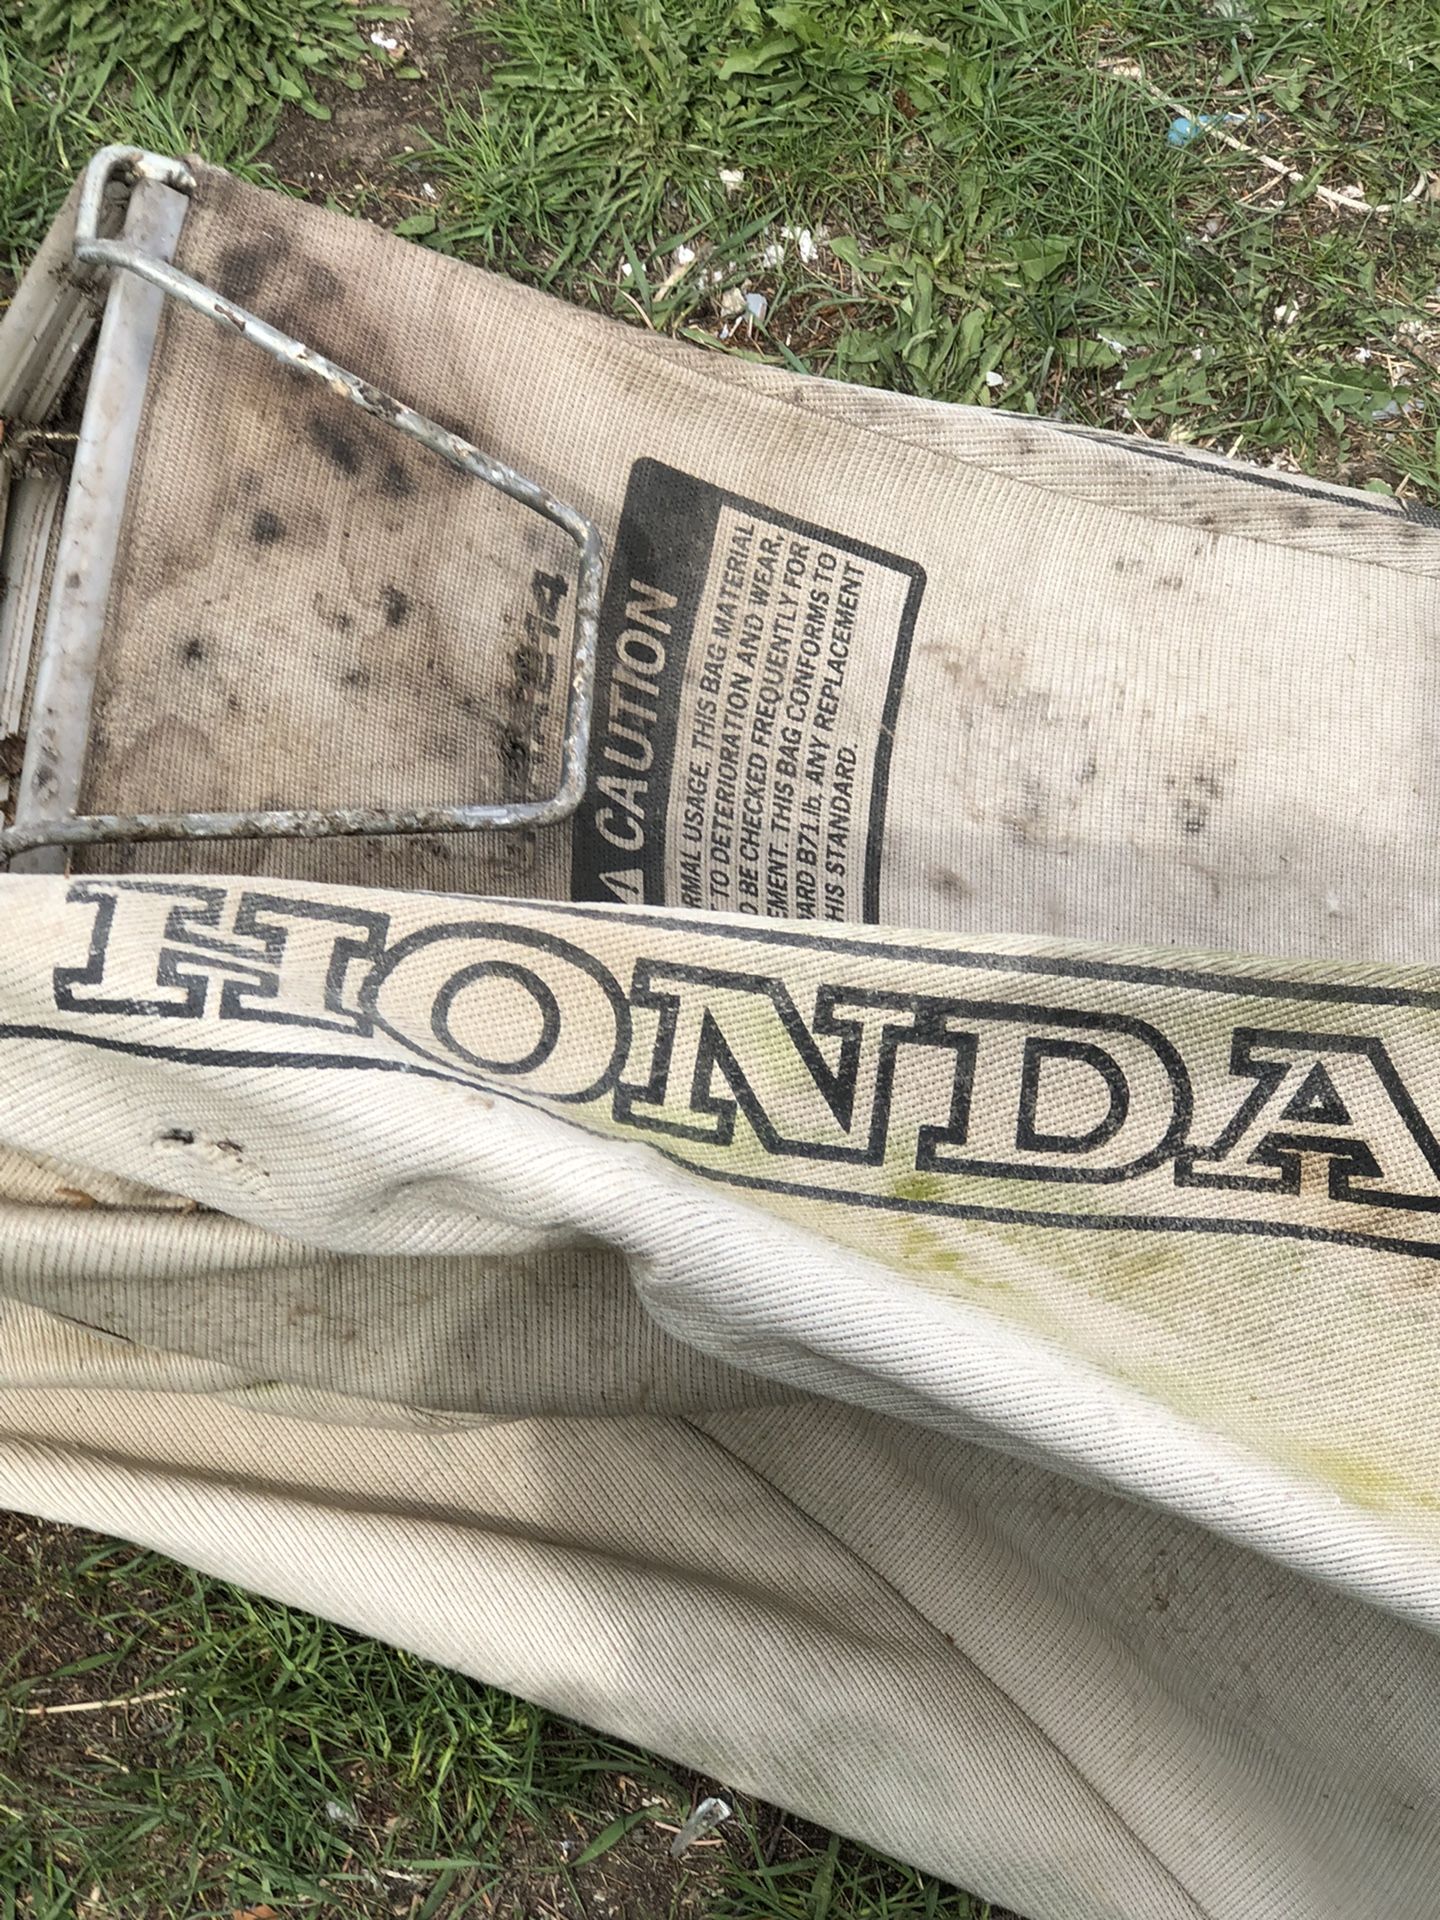 Honda Self Propelled  Lawn Mower Bags 